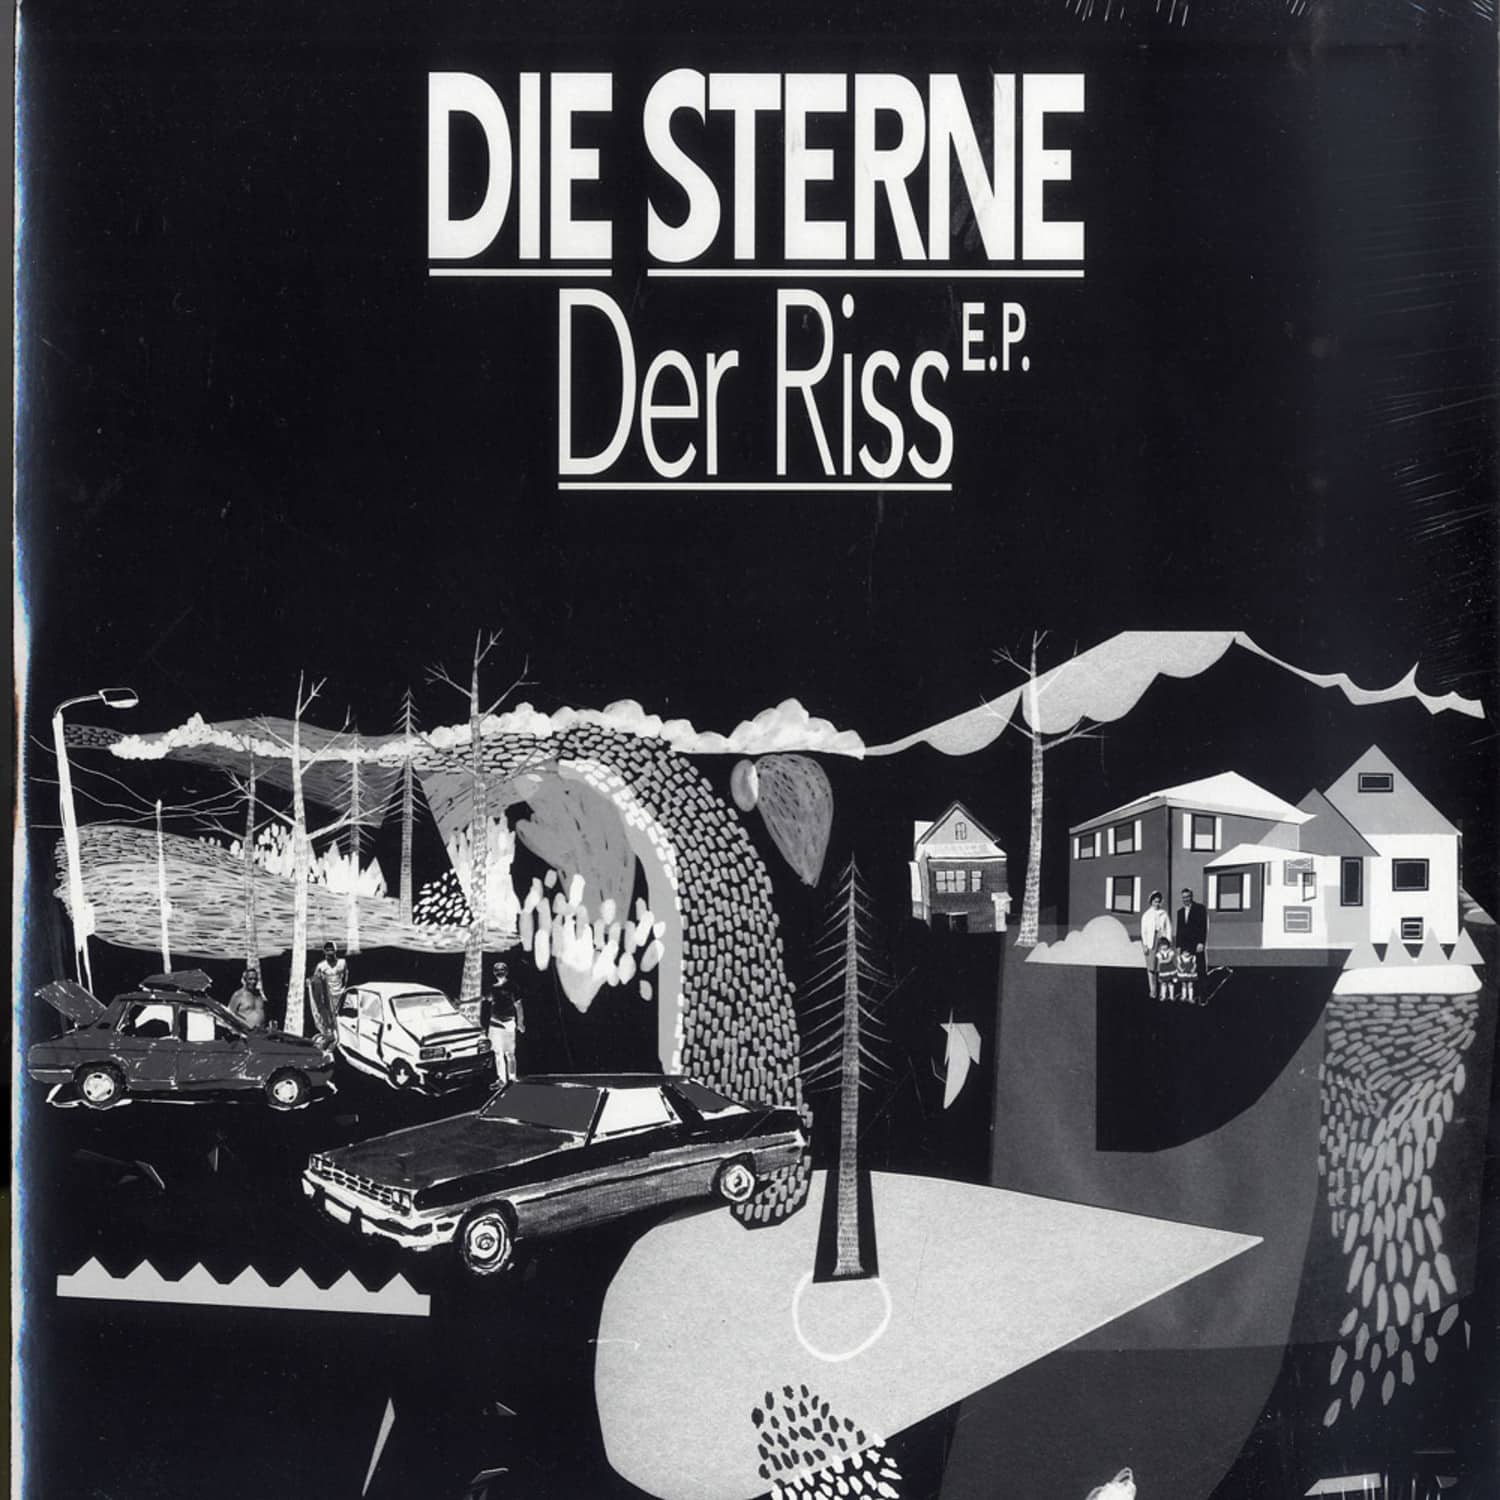 Die Sterne - DER RISS EP